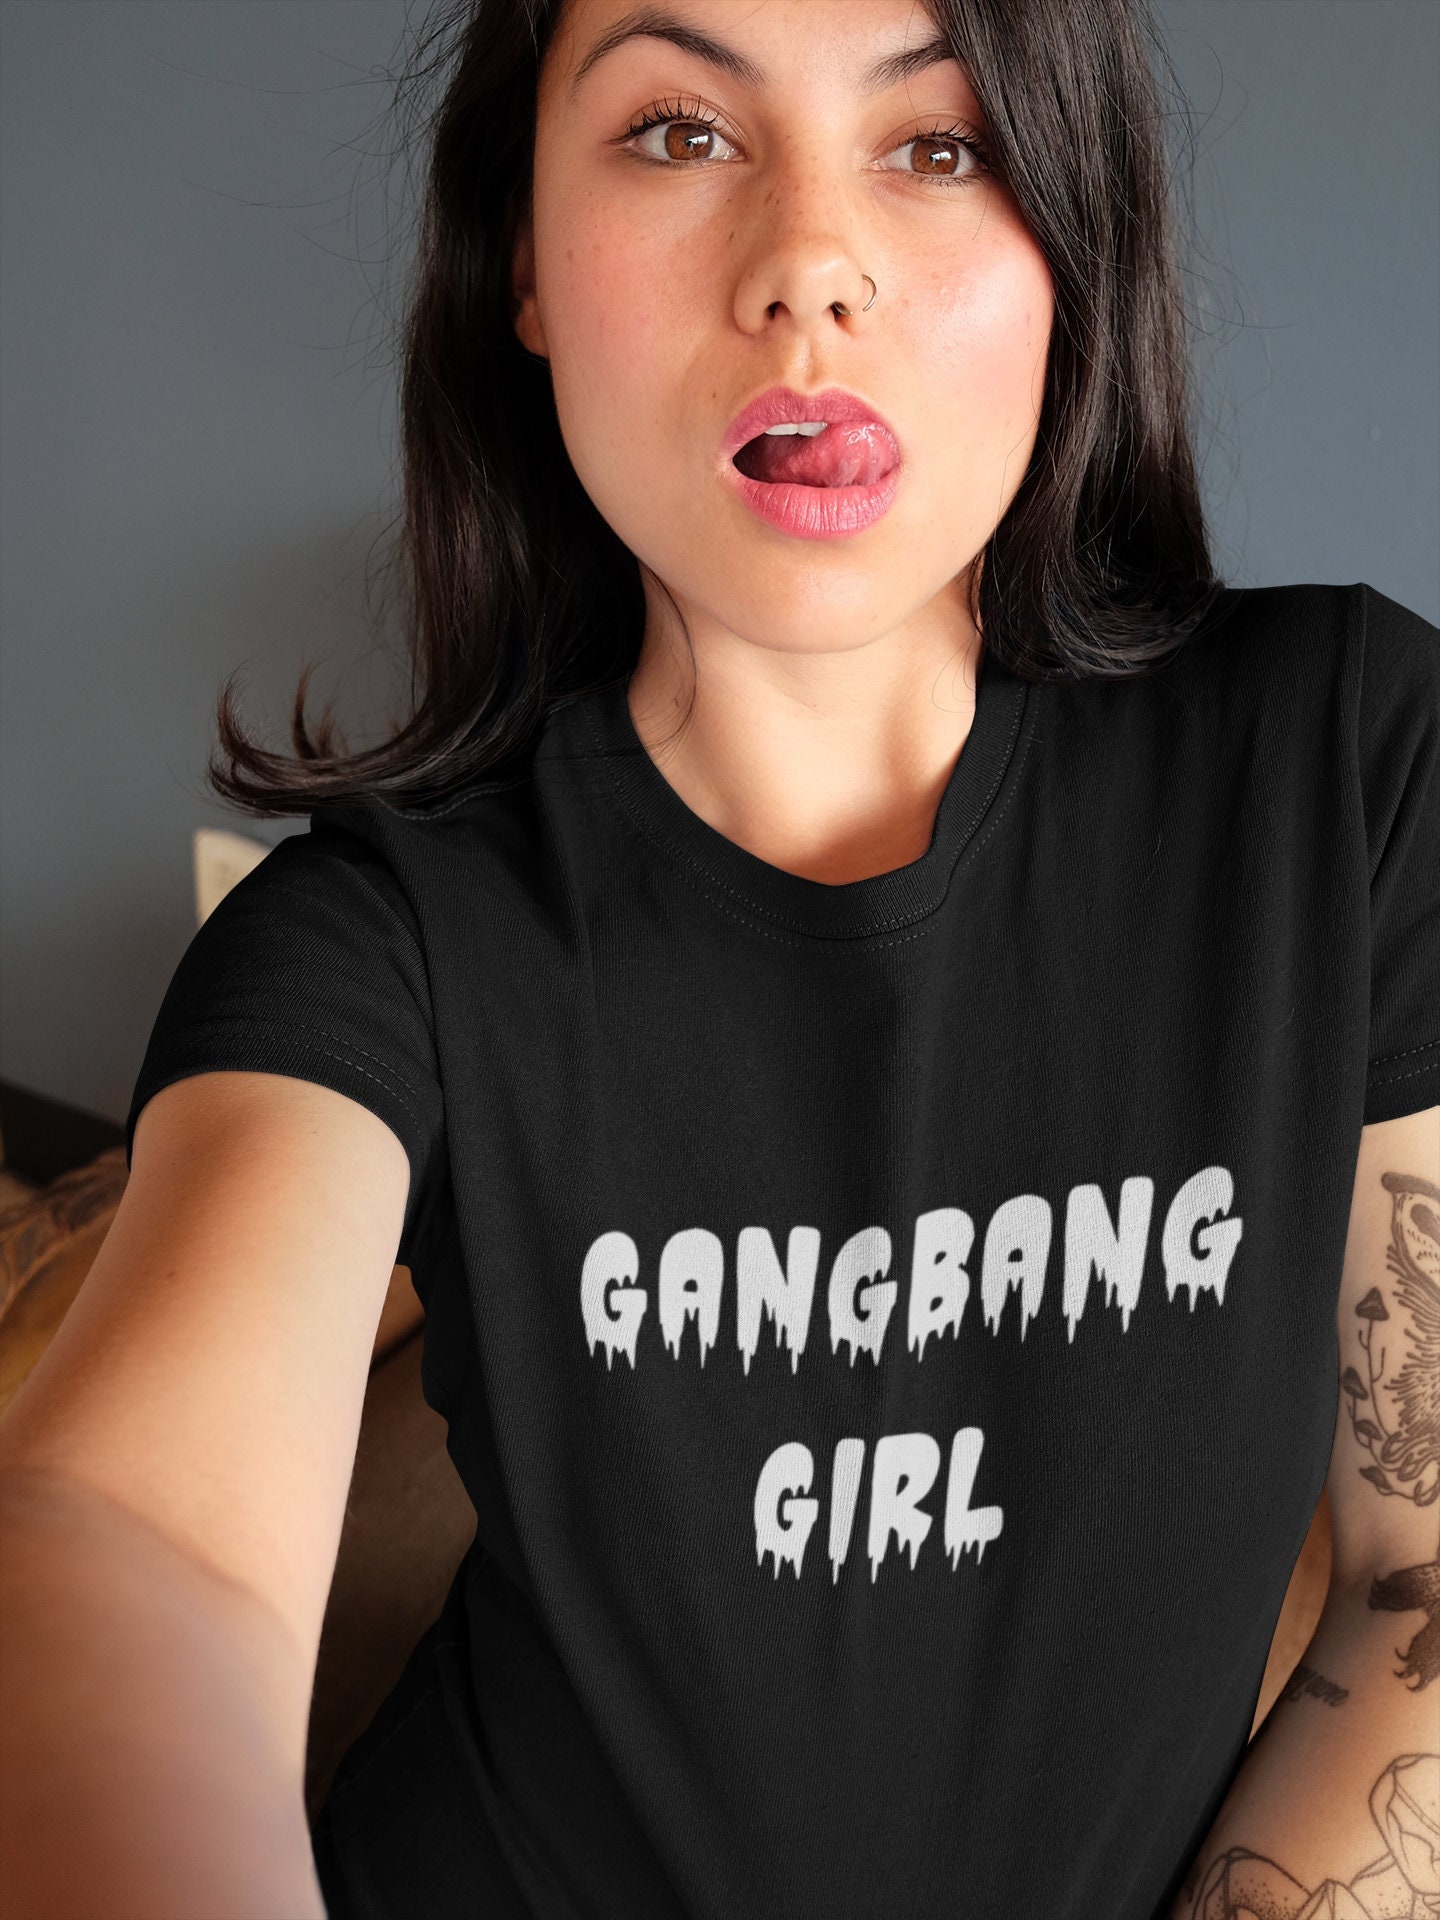 Gangbang Meisje Shirt Orgie Kleding Groep Sex Shirt Sexy